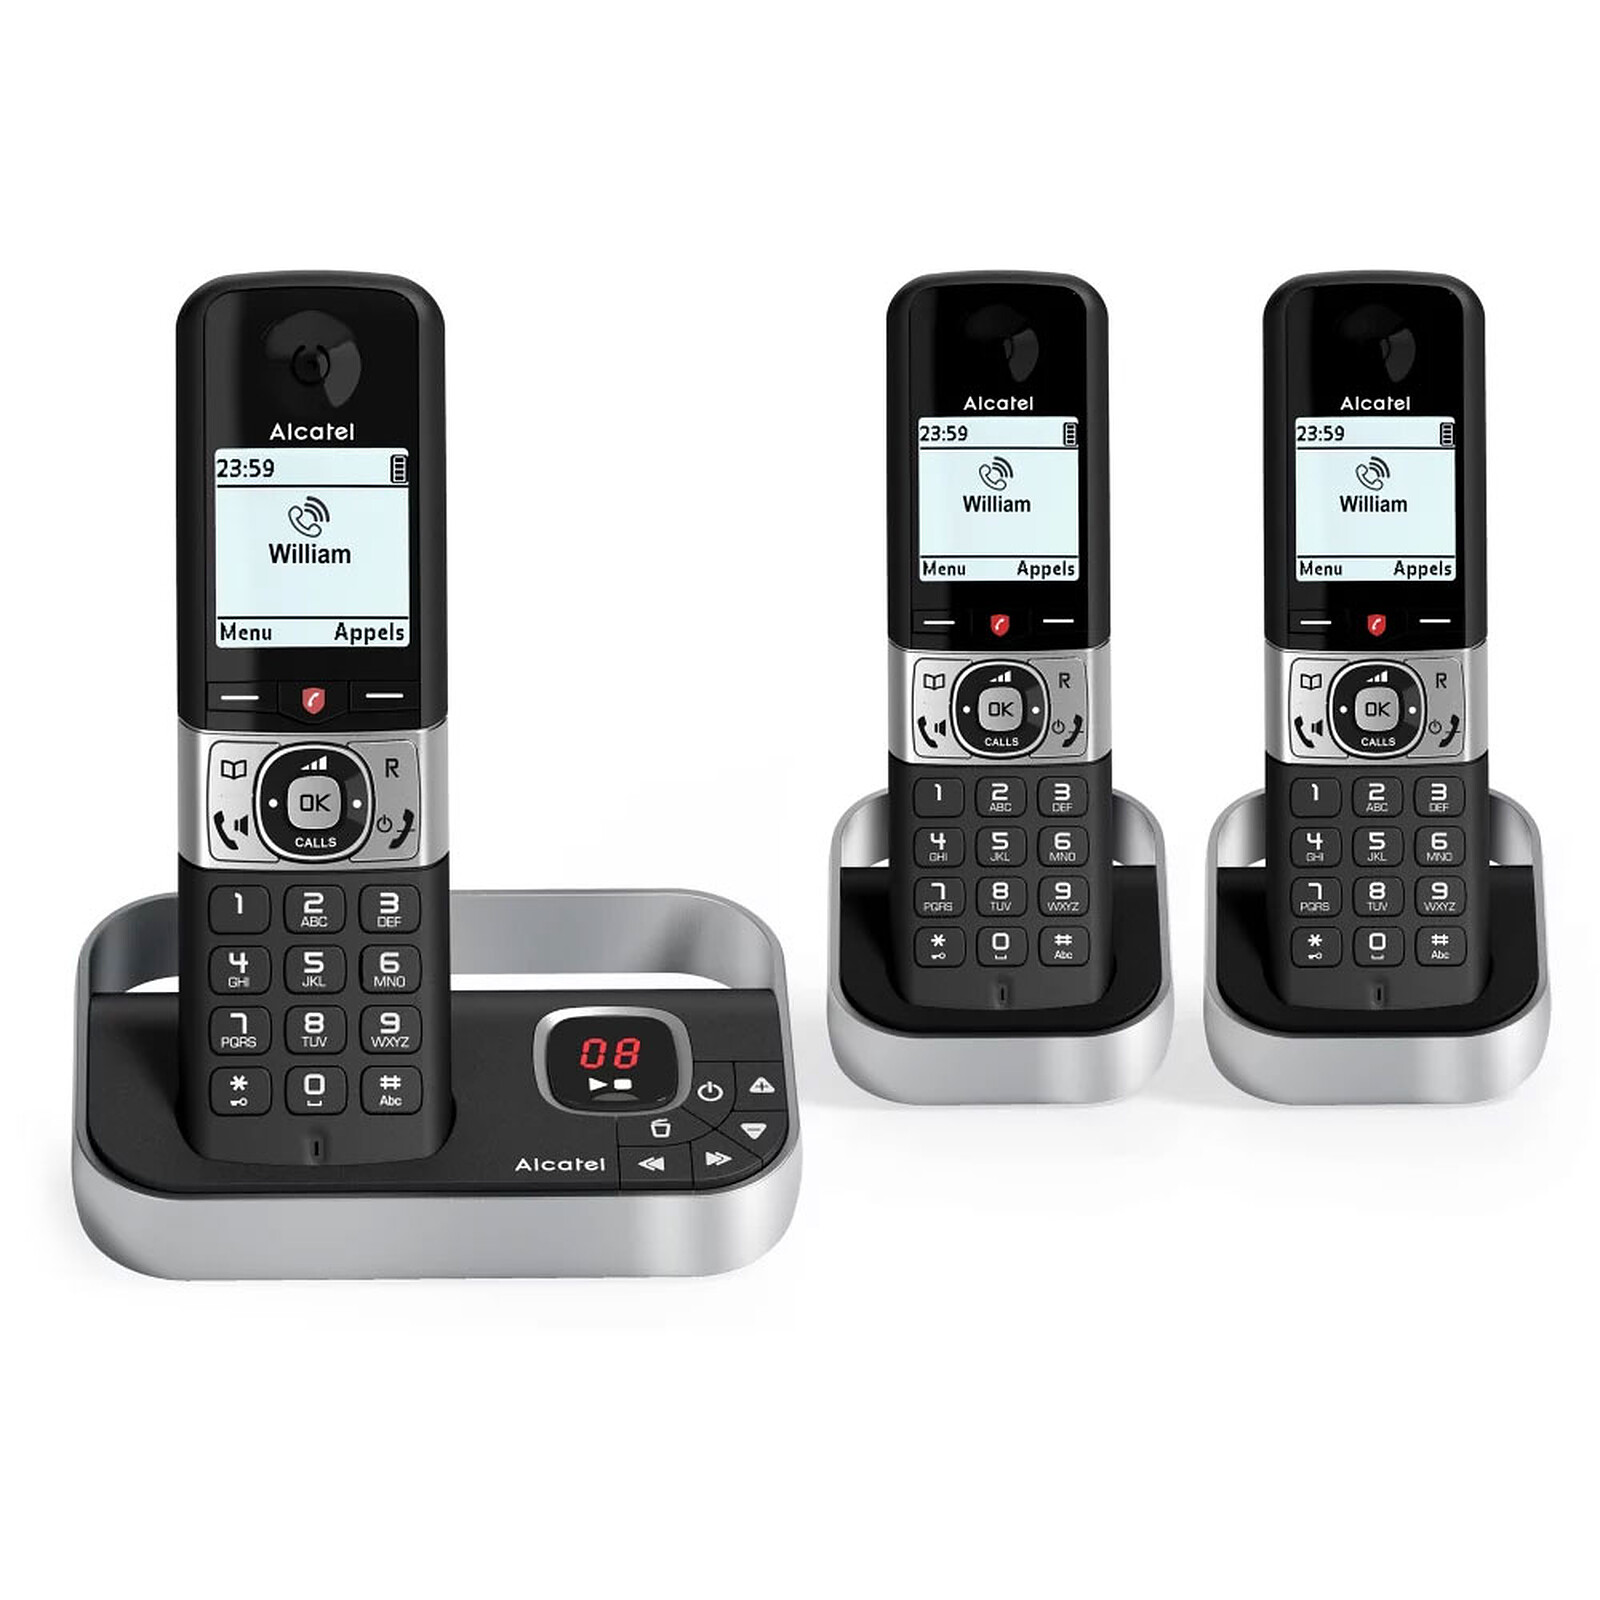 ALCATEL Téléphone sans fil - F860 VOICE Duo - Répondeur - Blanc et